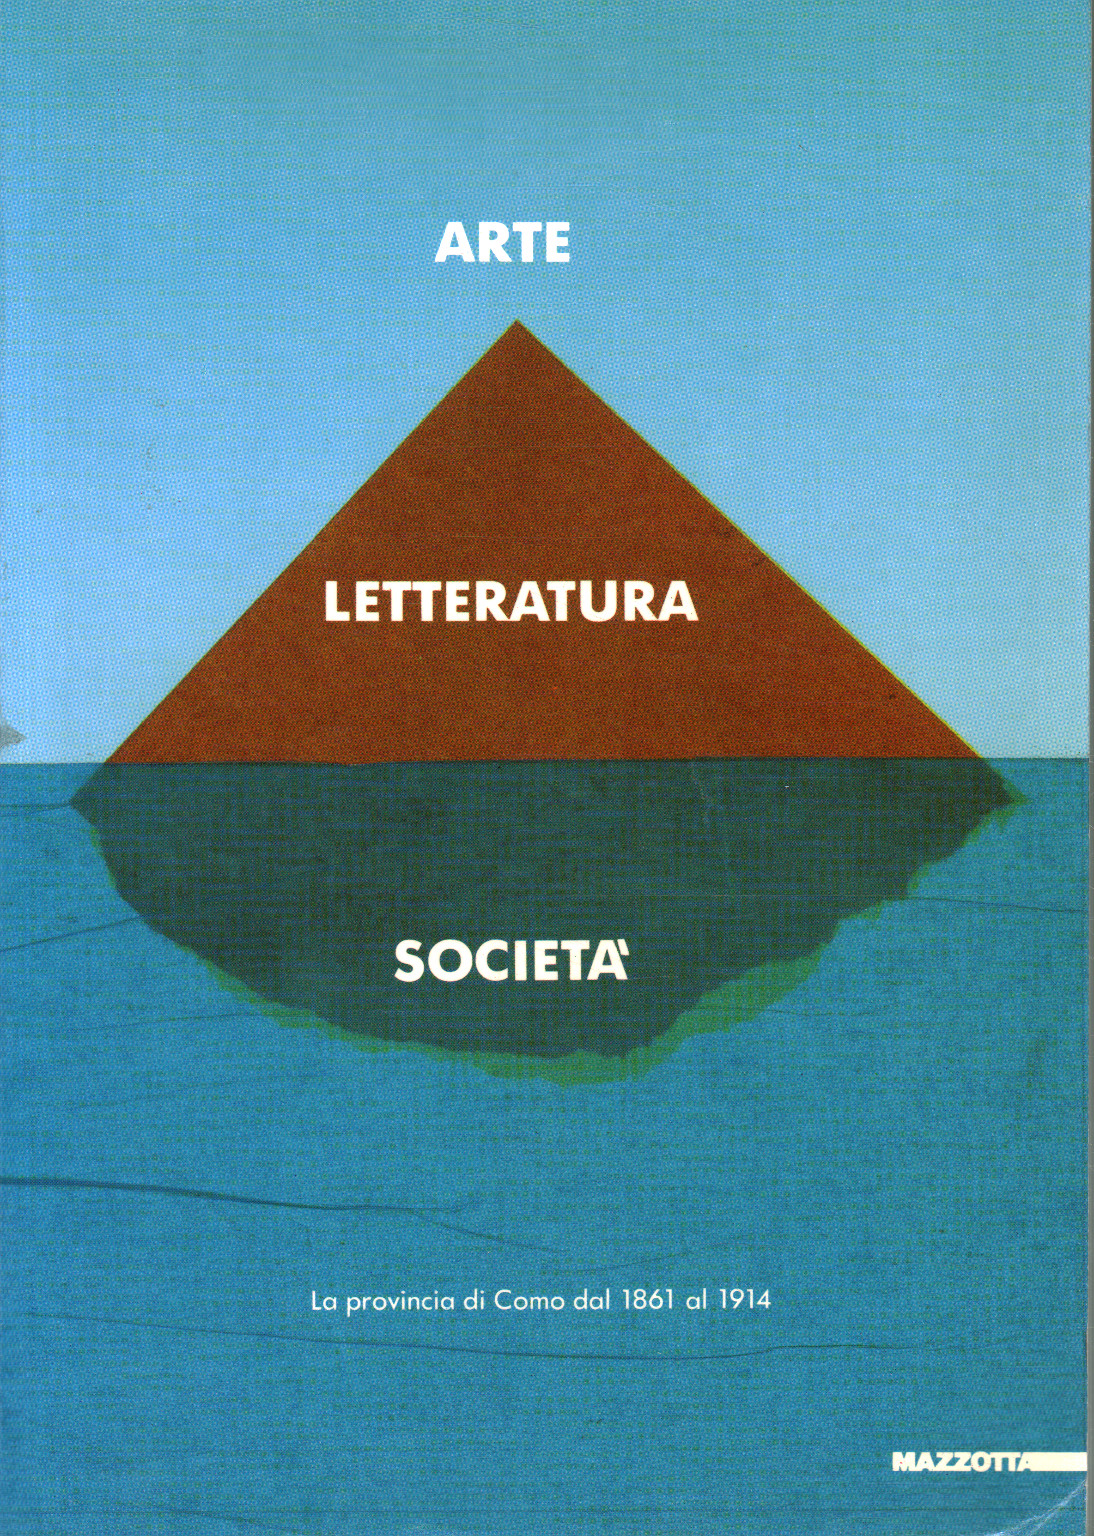 Arte¸ letteratura e società, Luciano Caramel